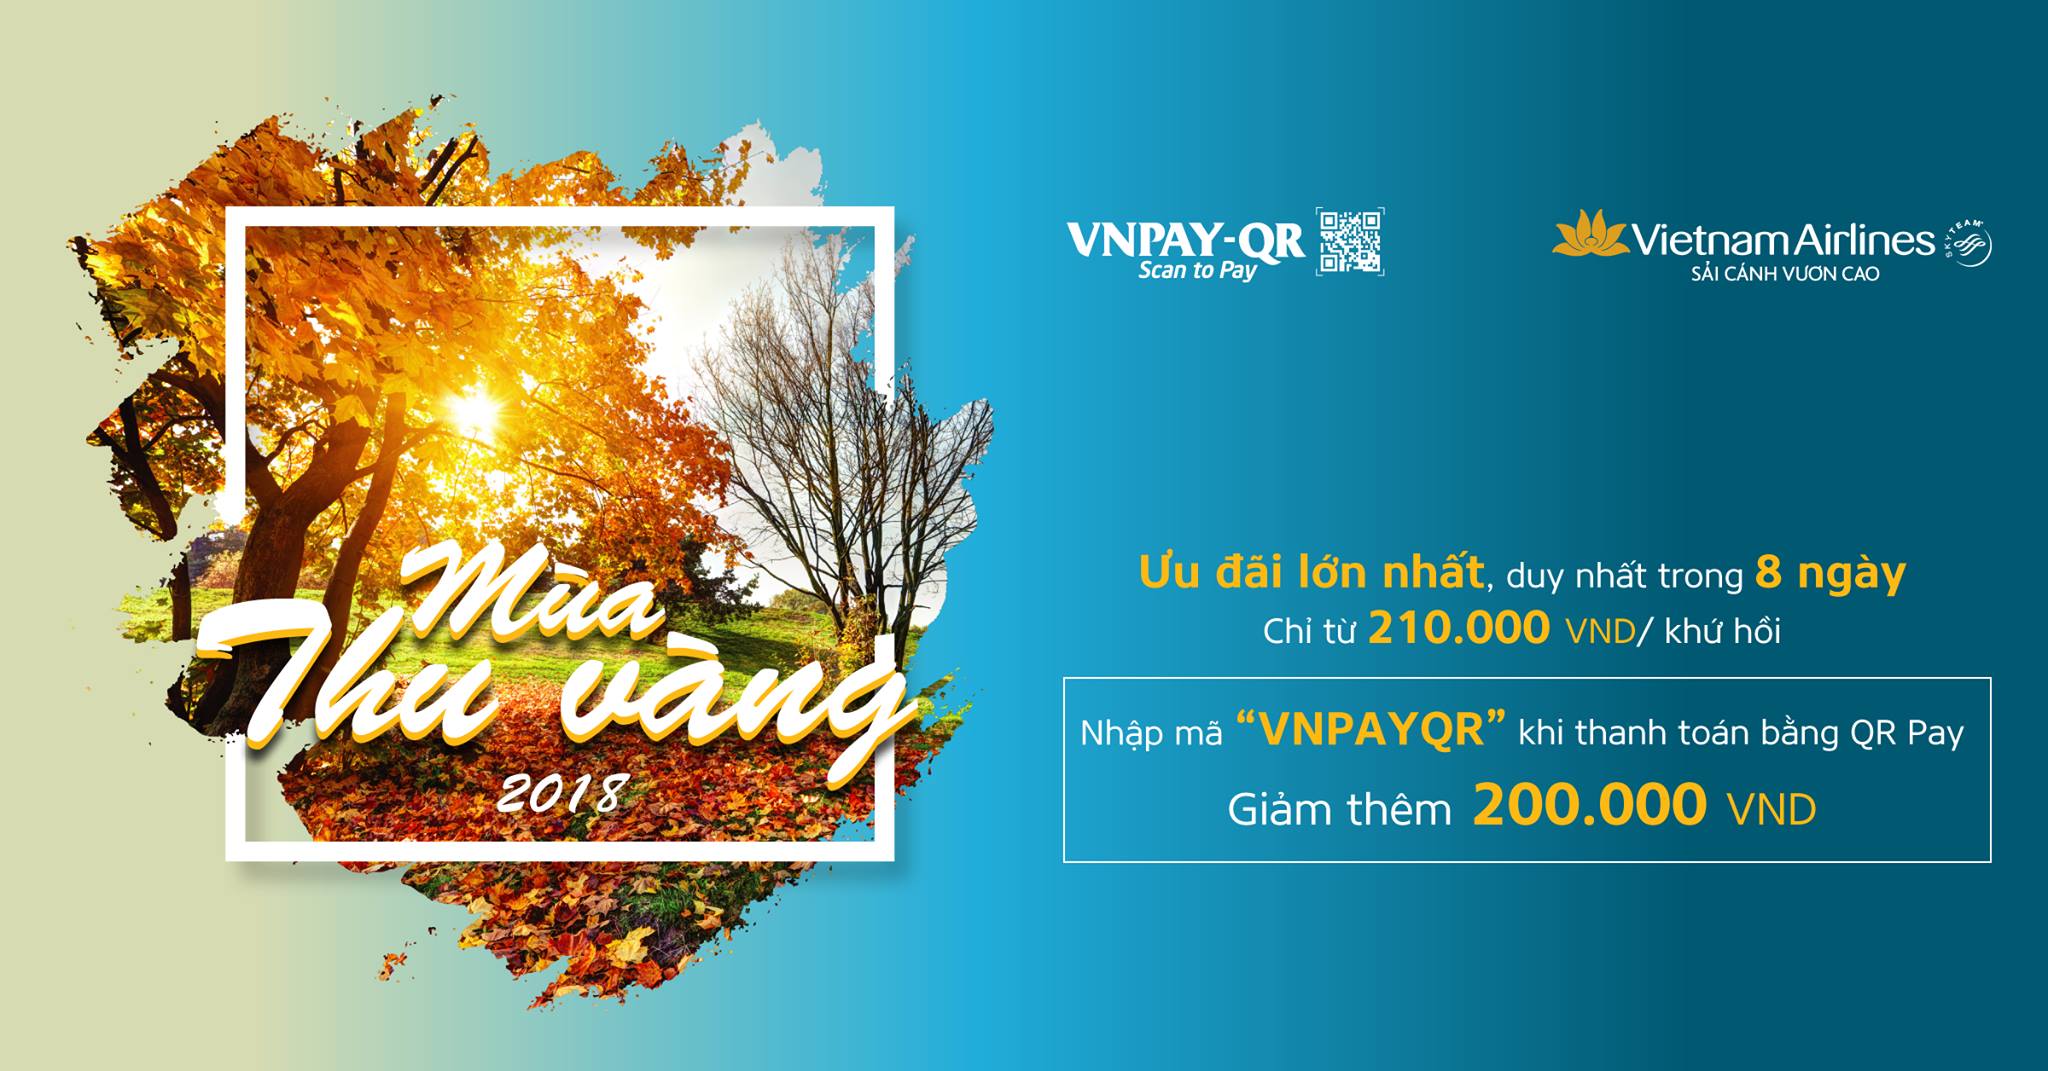 Mùa thu vàng - Bạt ngàn ưu đãi khi thanh toán vé Vietnam Airlines bằng QR Pay trên ứng dụng Mobile Banking